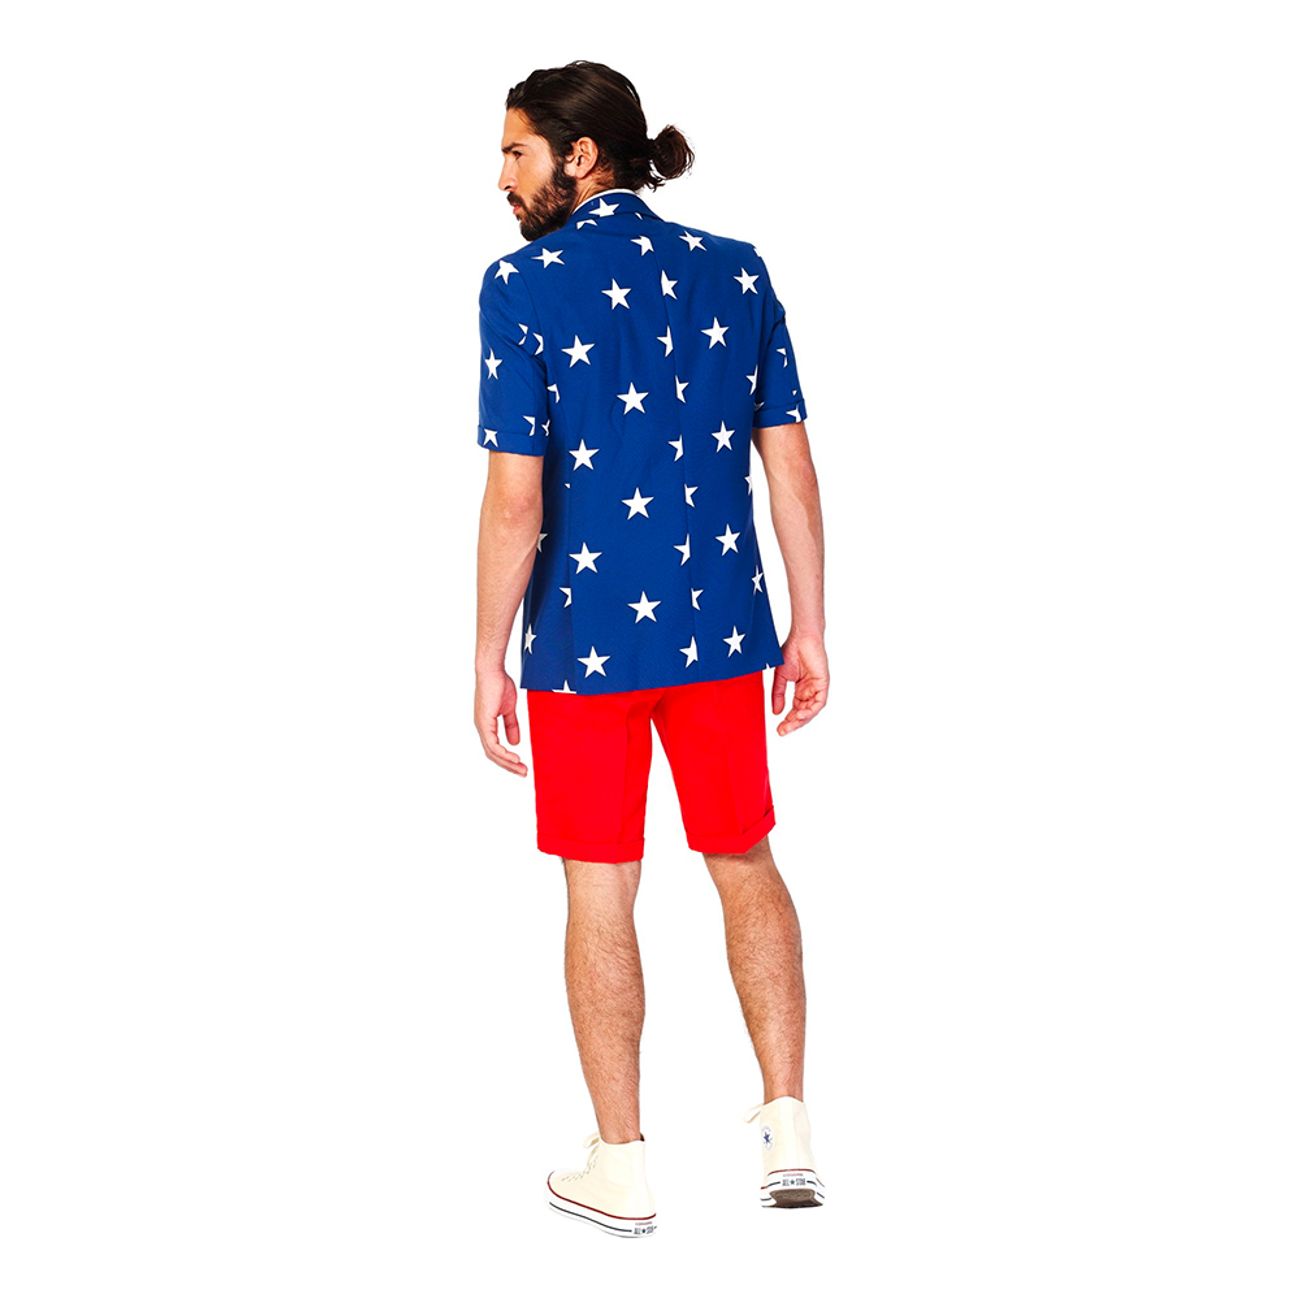 opposuits-stars-stripes-shorts-kostym-86426-2